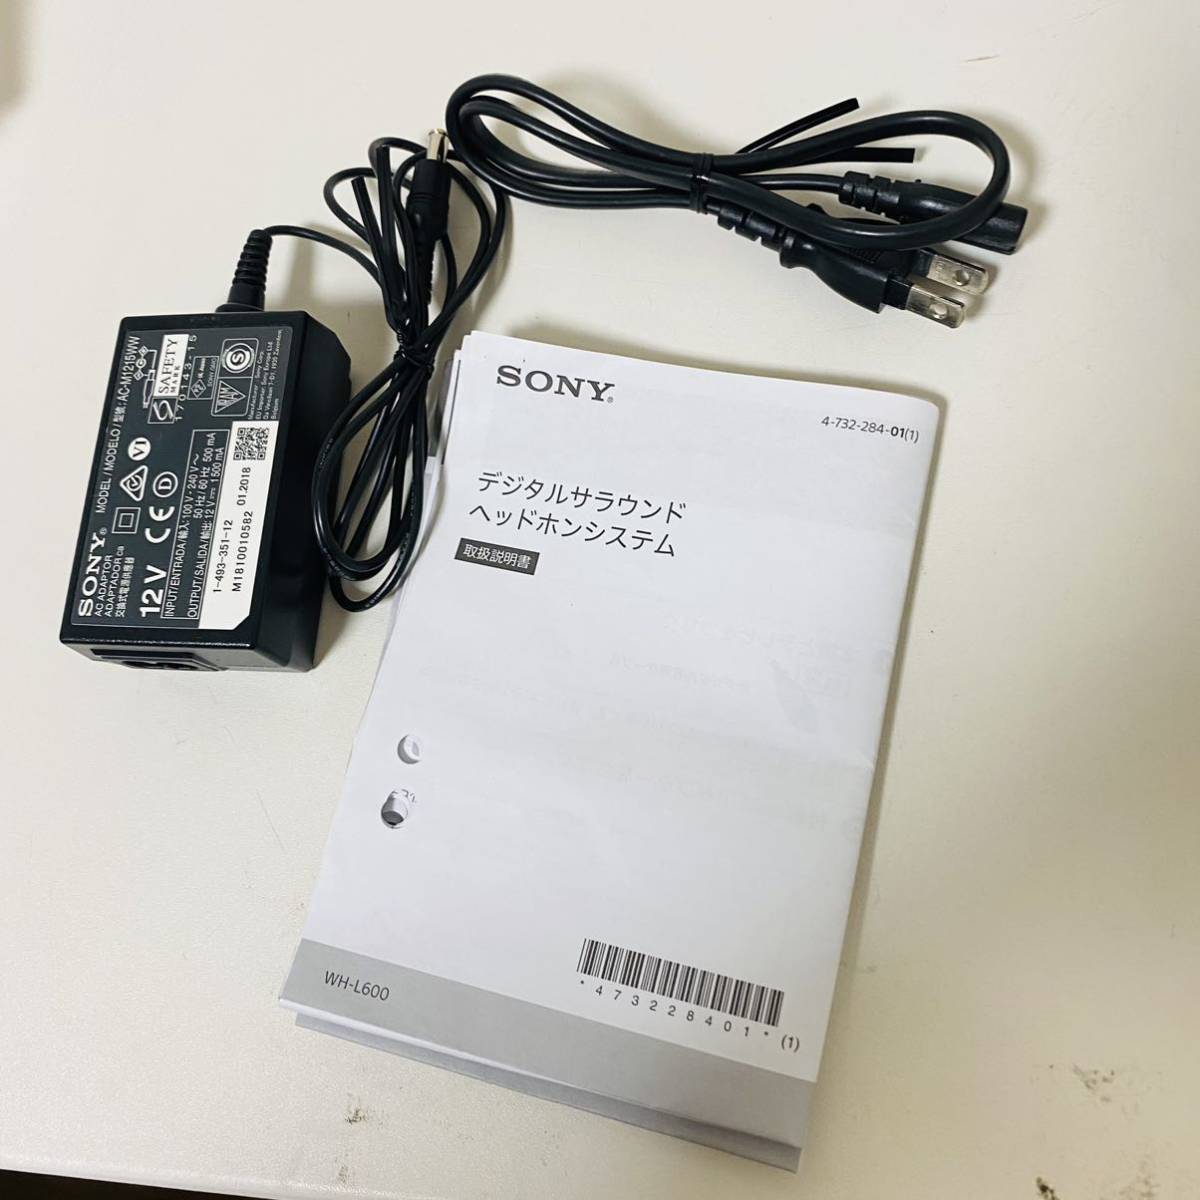 一番の Sony WH-L600 2018年モデル デジタルサラウンドヘッドホン